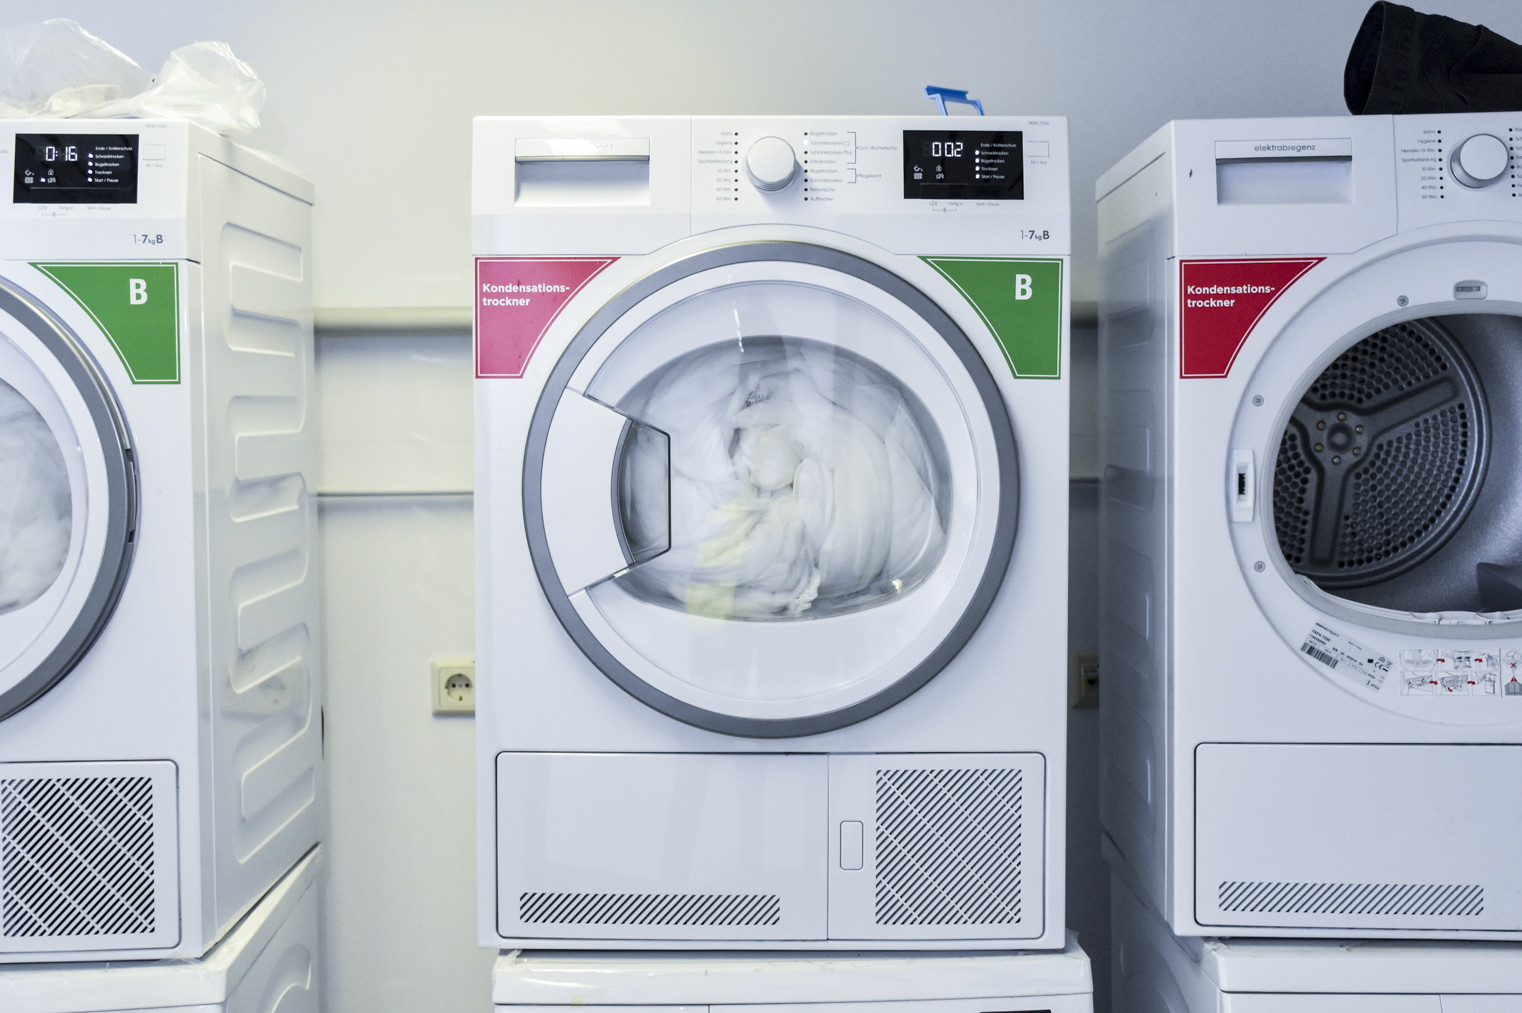 Nebeneinander stehen drei Trockner, die jeweils auf einer Waschmaschine stehen.